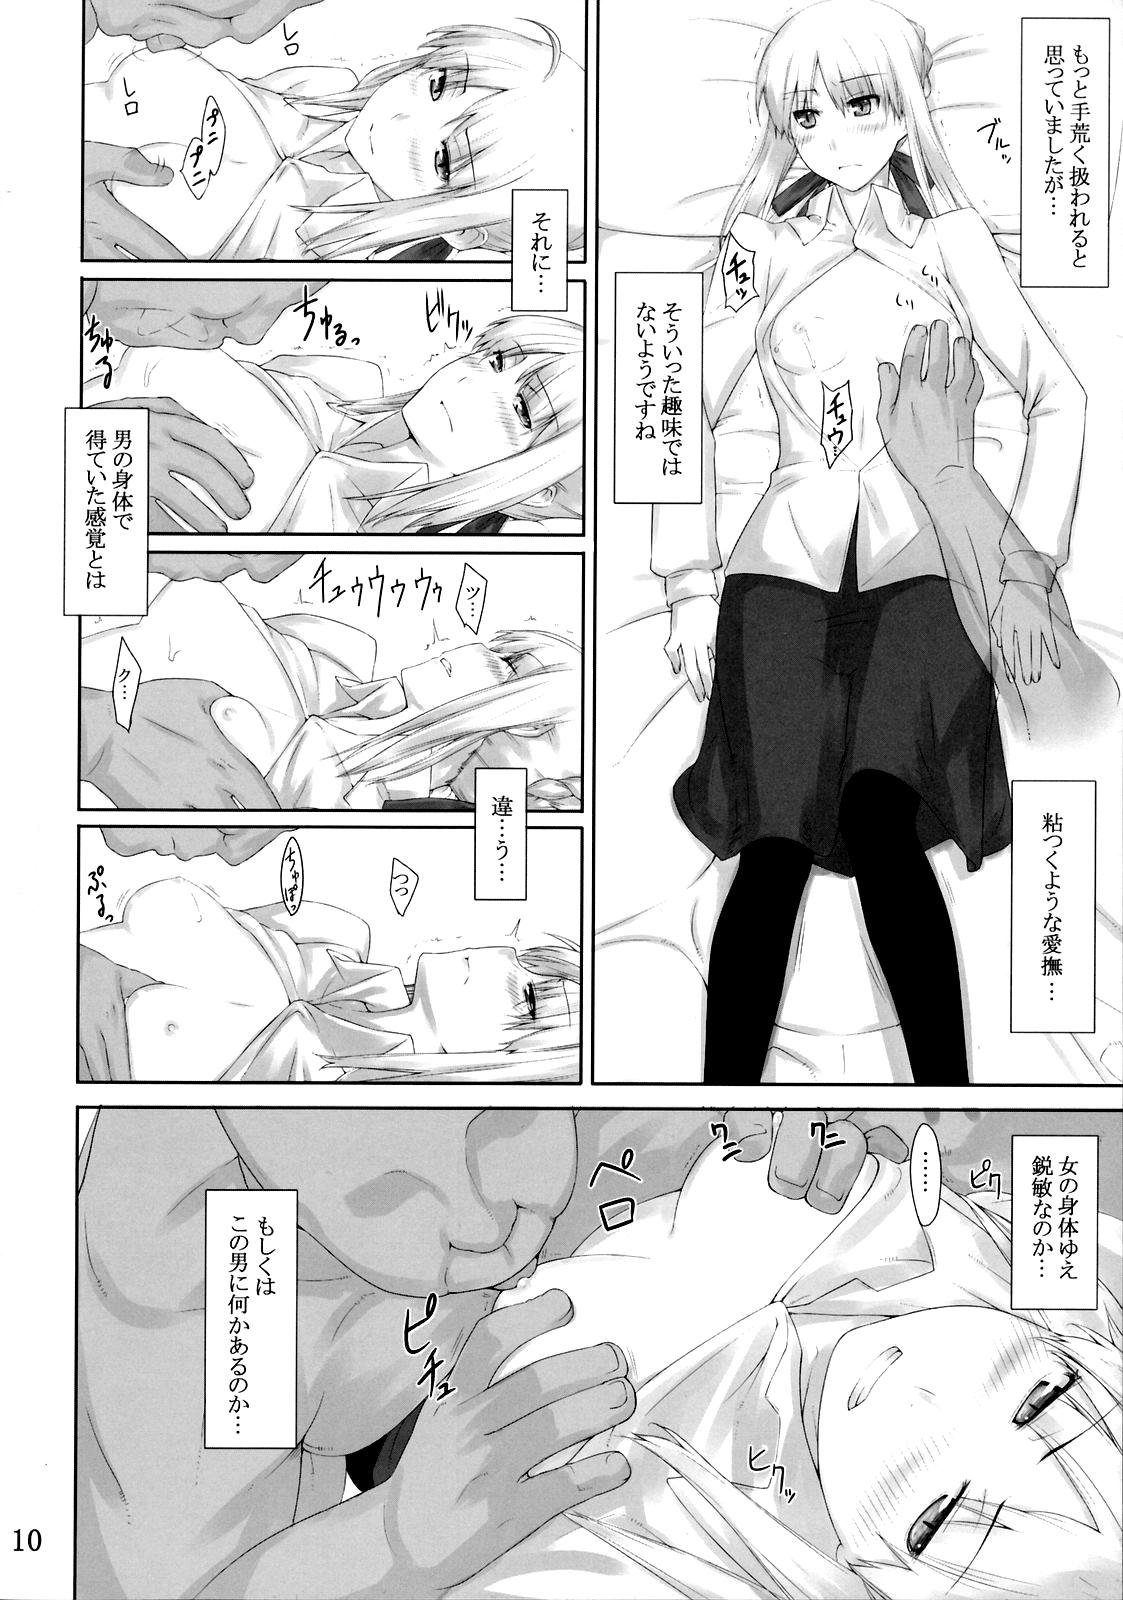 Internal Tohsaka-ke no Kakei Jijou 3 - Fate stay night Spreadeagle - Page 9